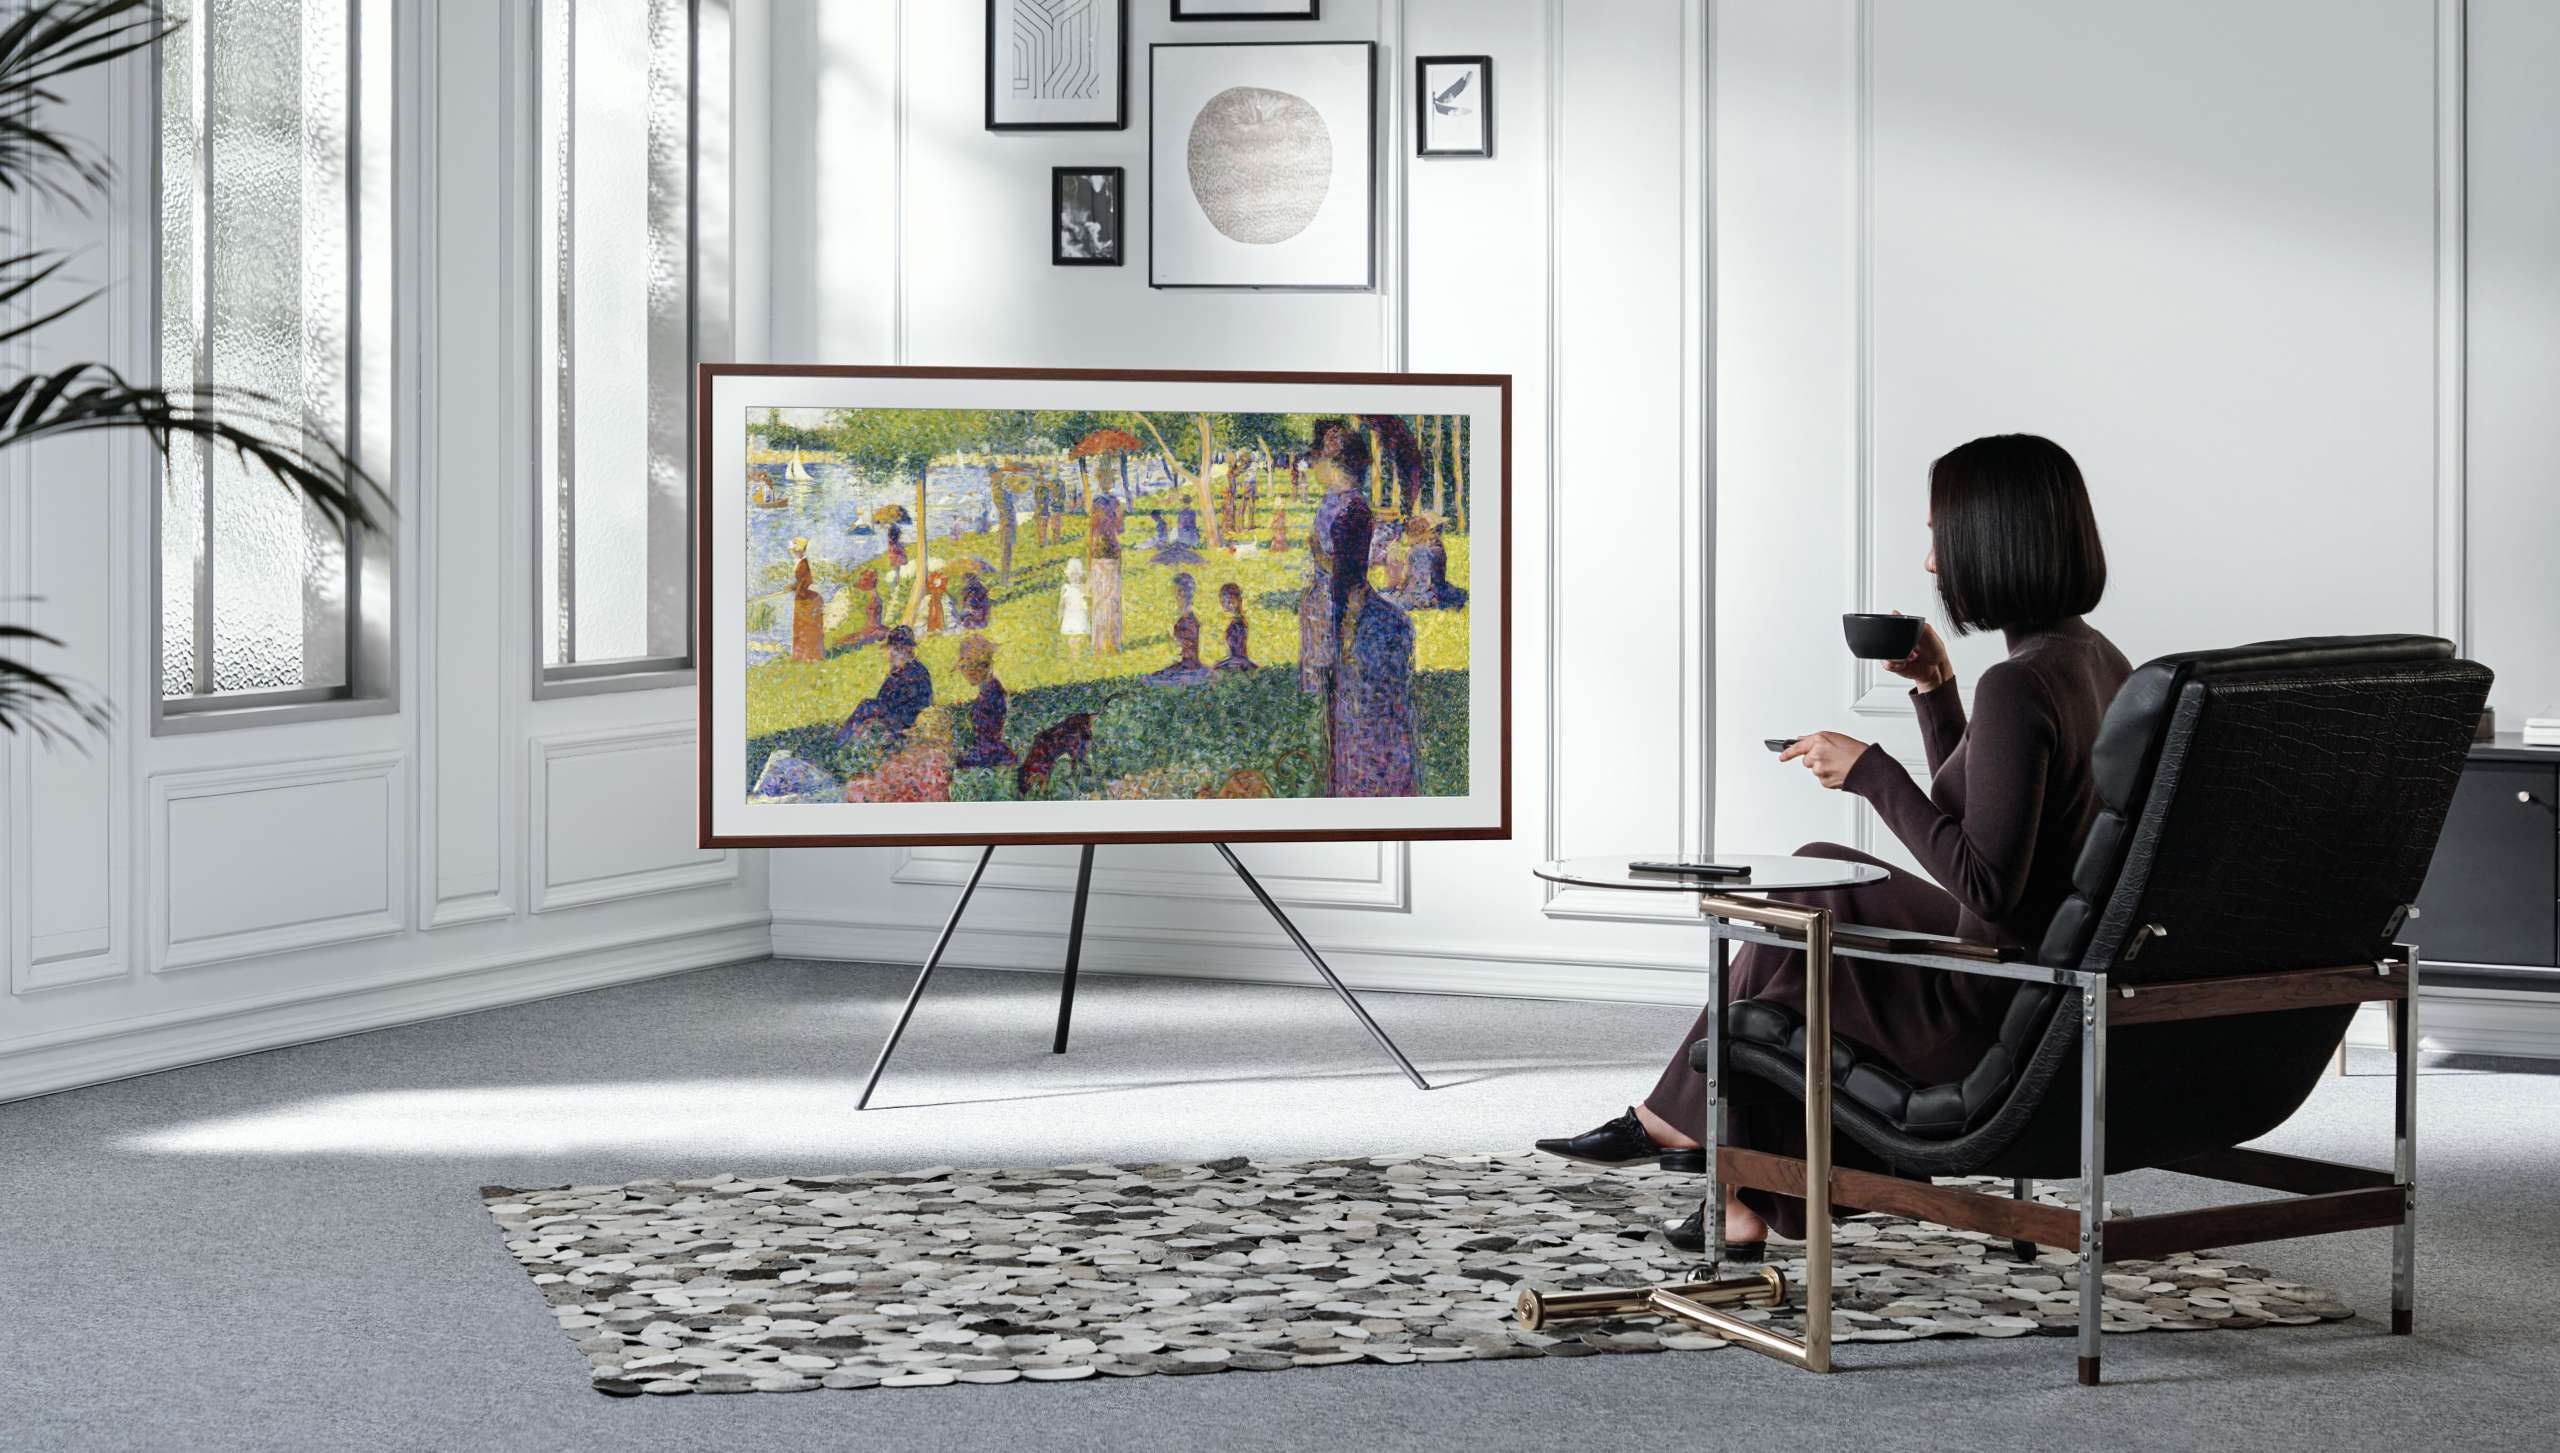 Samsung The Frame pojawi się na specjalnych aukcjach! Kiedy i gdzie można zobaczyć ten wyjątkowy TV?